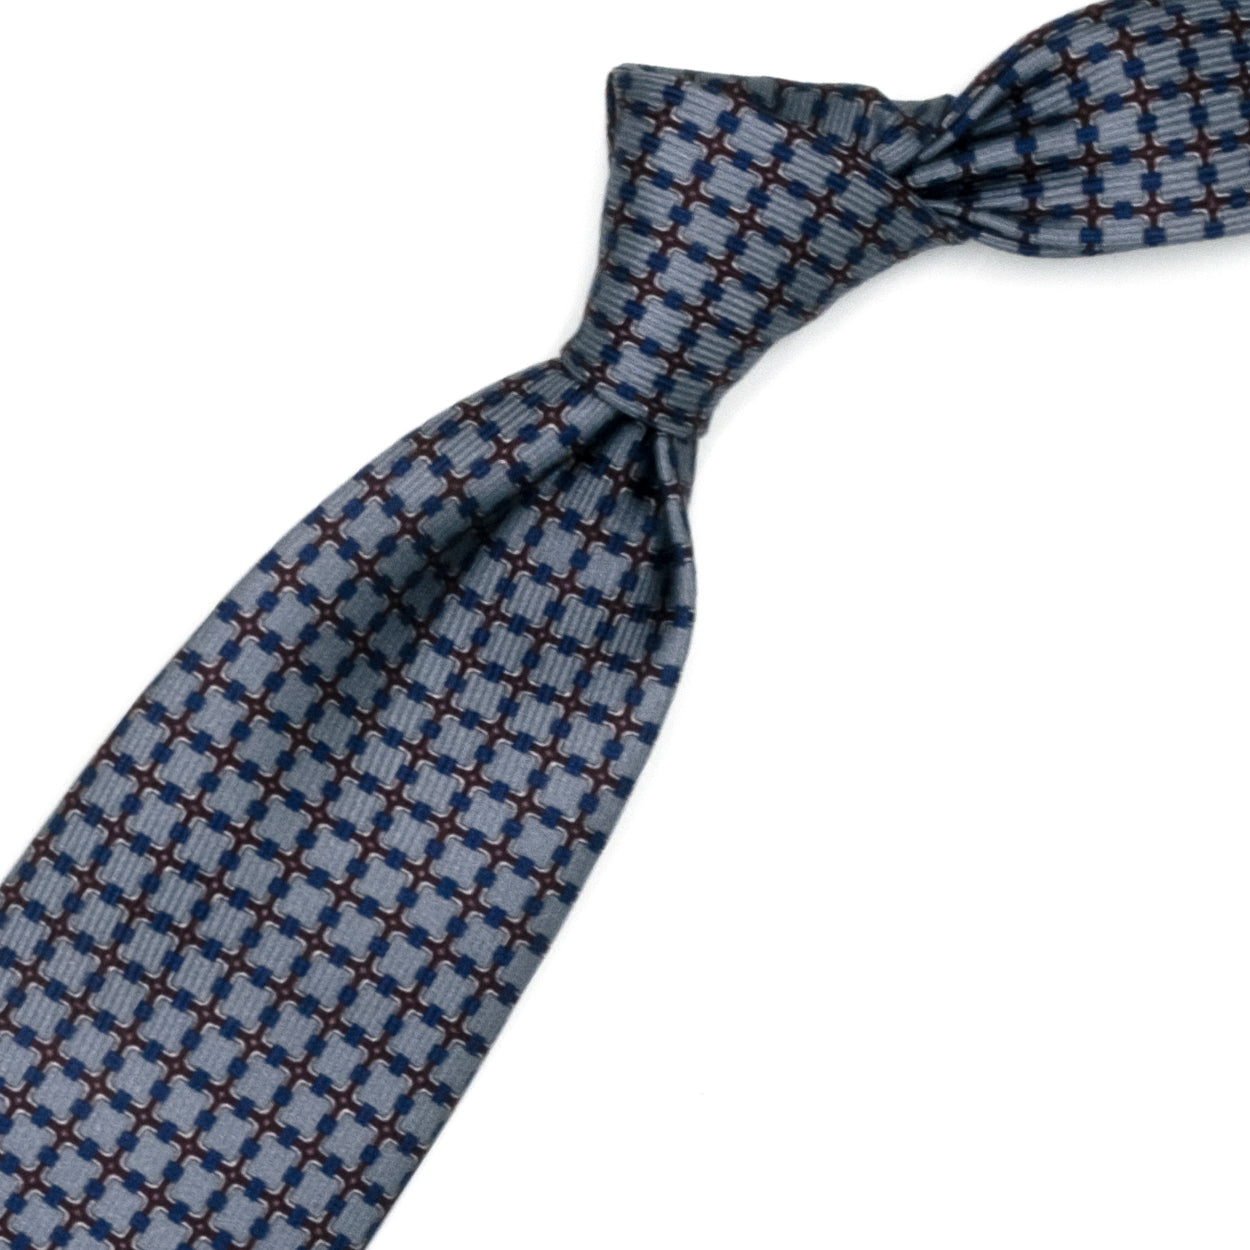 Cravatta marrone con quadrati grigi e blu